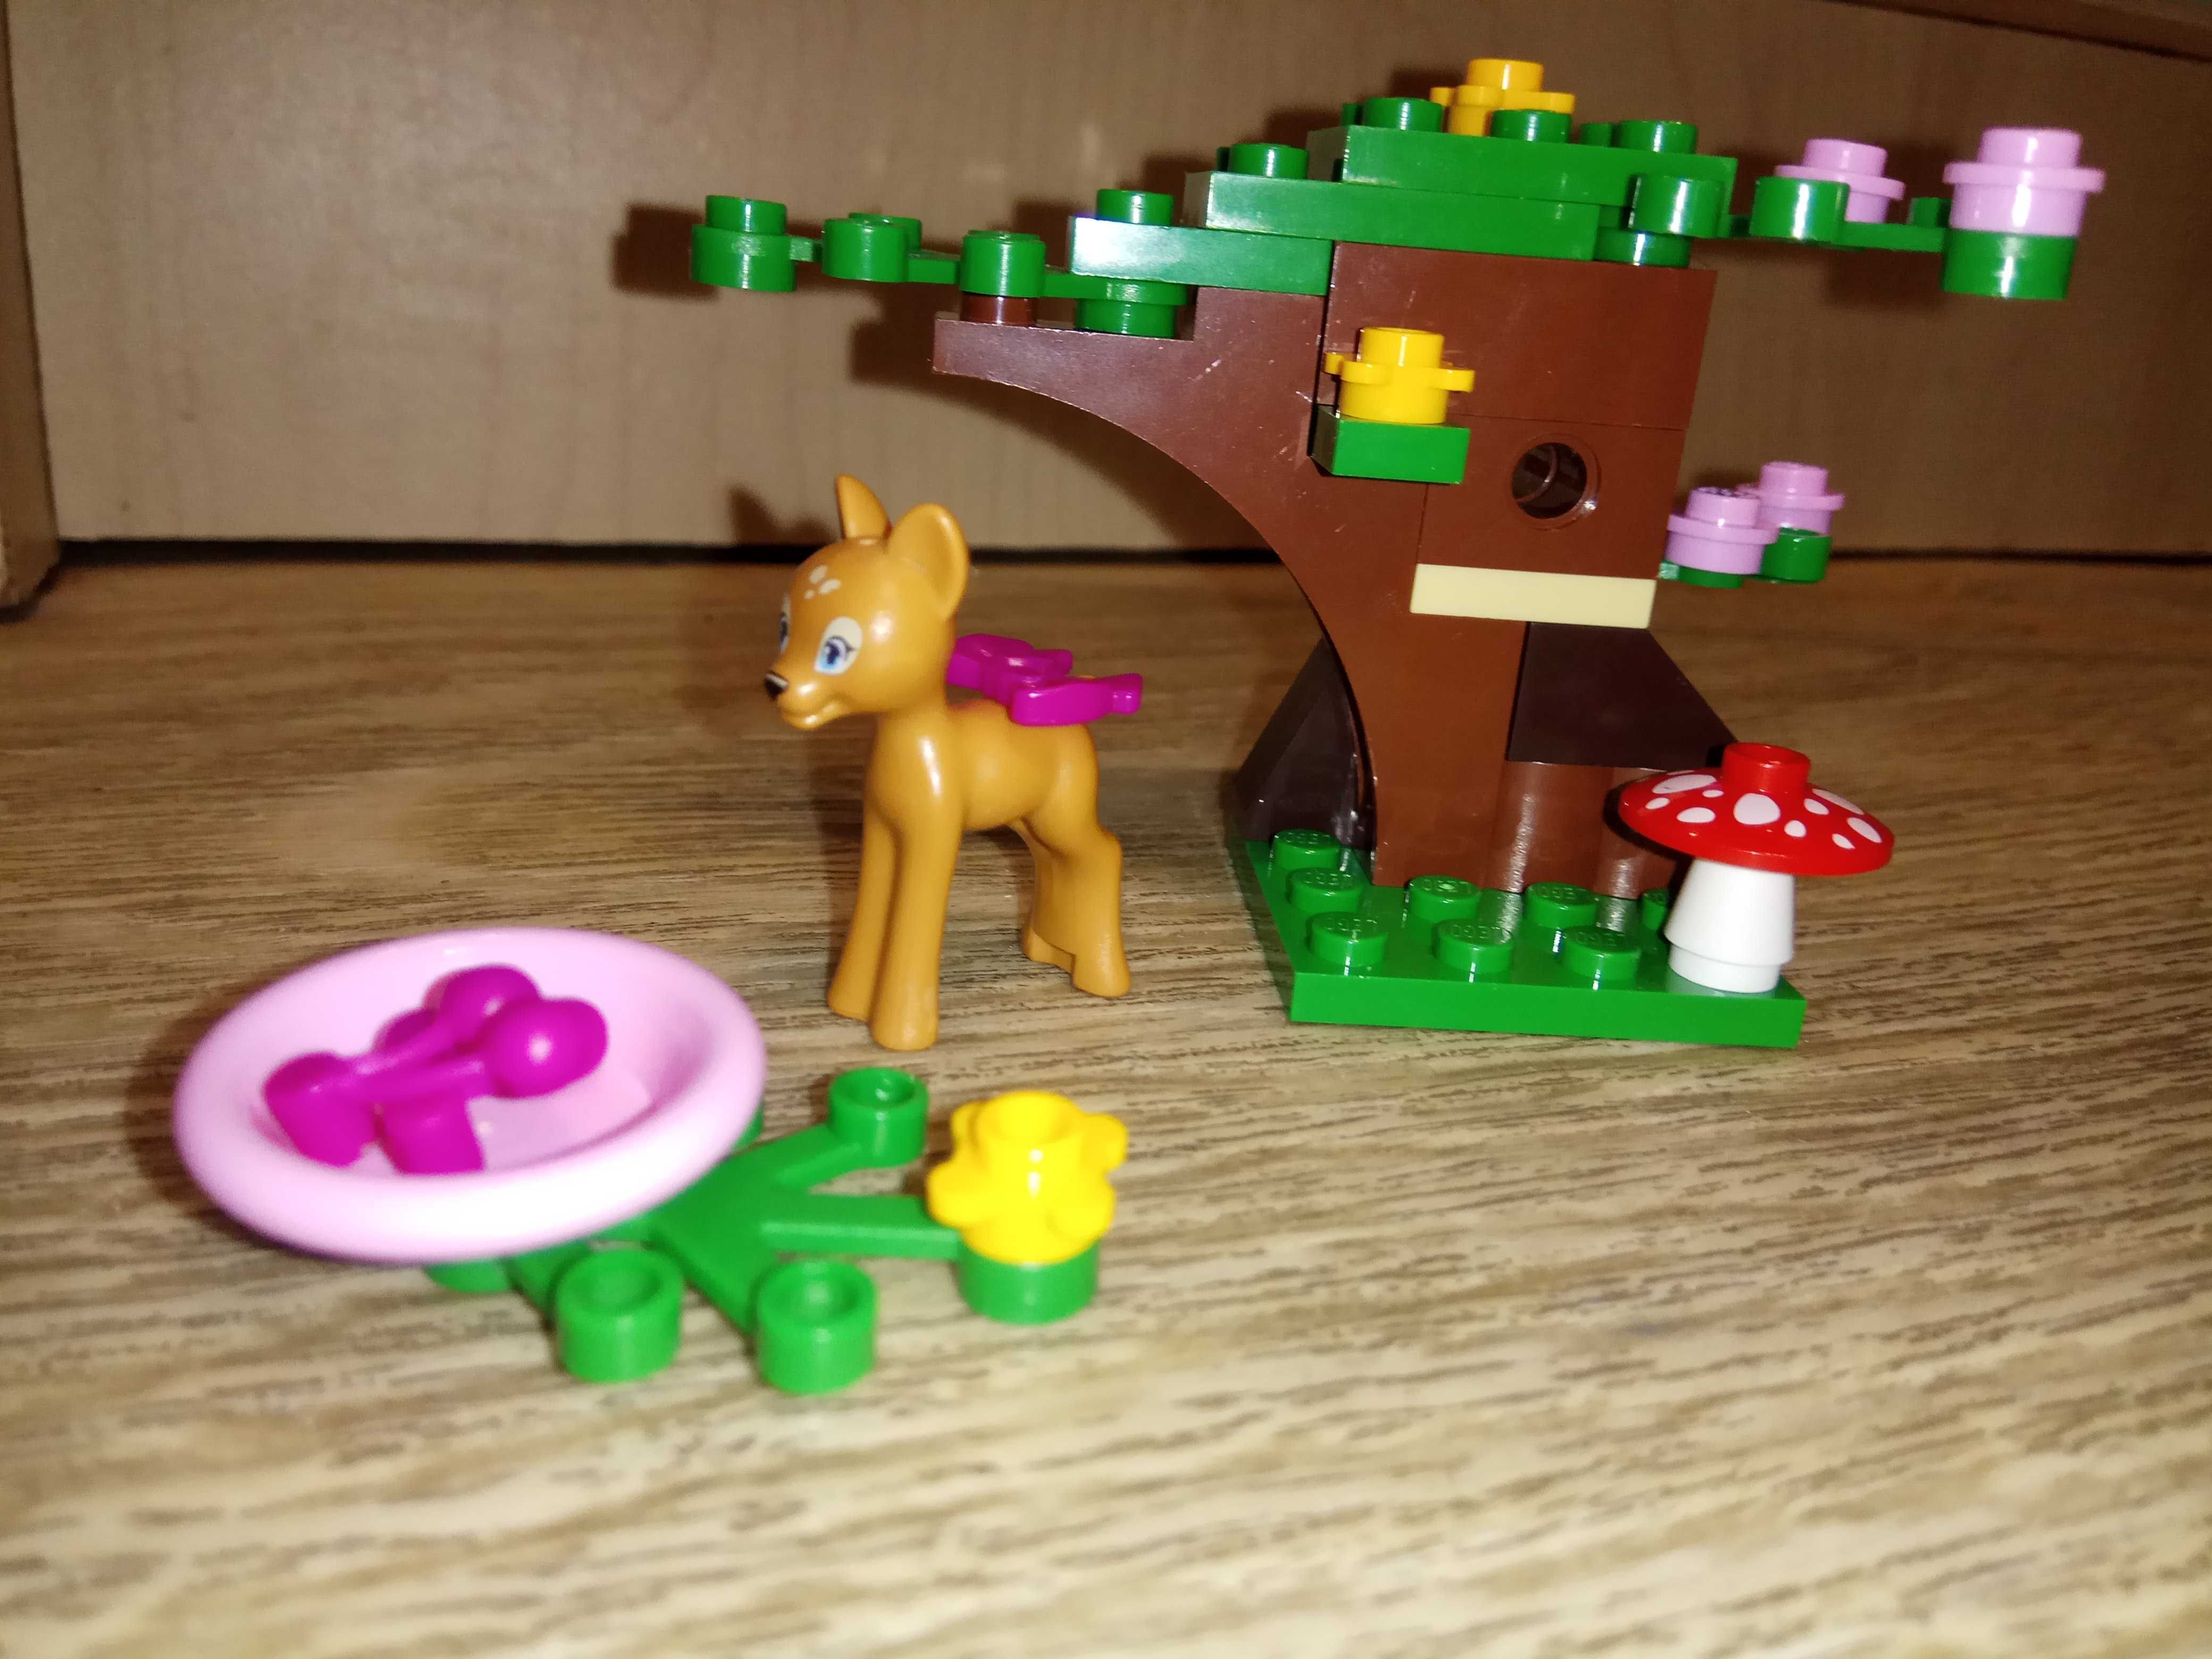 ОРИГИНАЛ! Конструктор LEGO Friends Лего Френдс Оленёнок в лесу.ЗВОНИТЕ